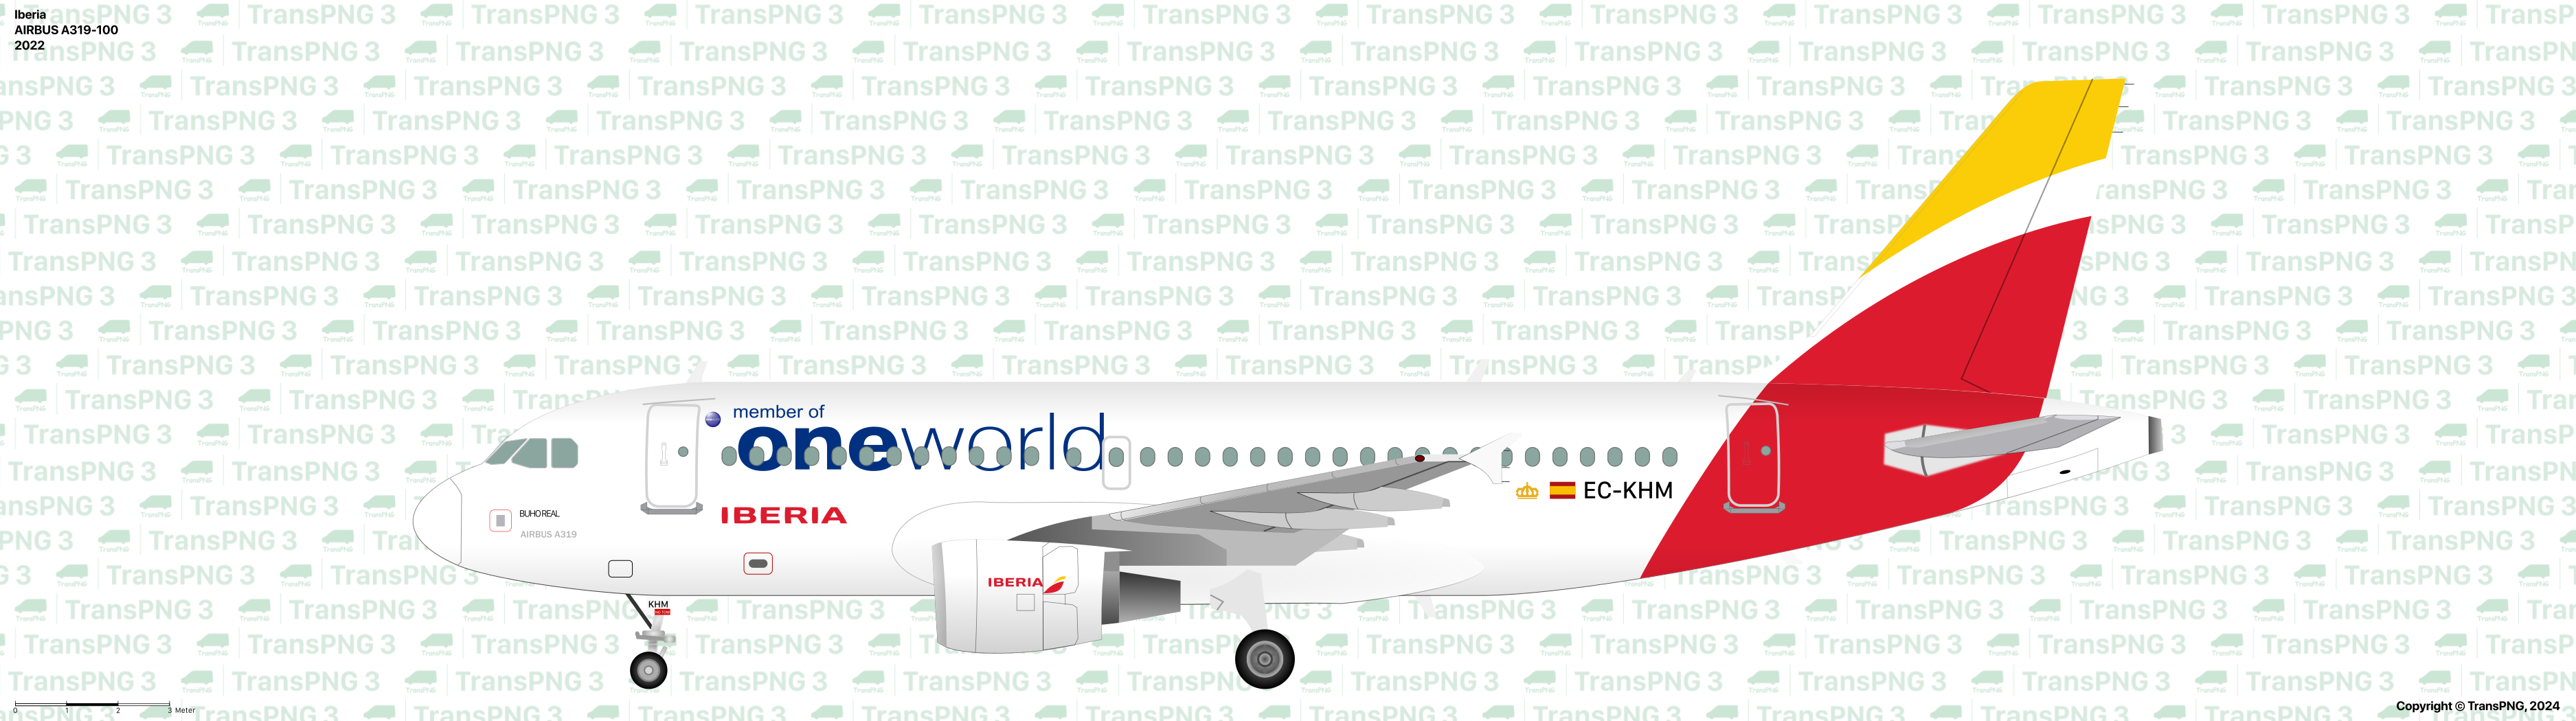 TransPNG.net | 分享世界各地多種交通工具的優秀繪圖 - 客機 53481715388_fca8337c59_o